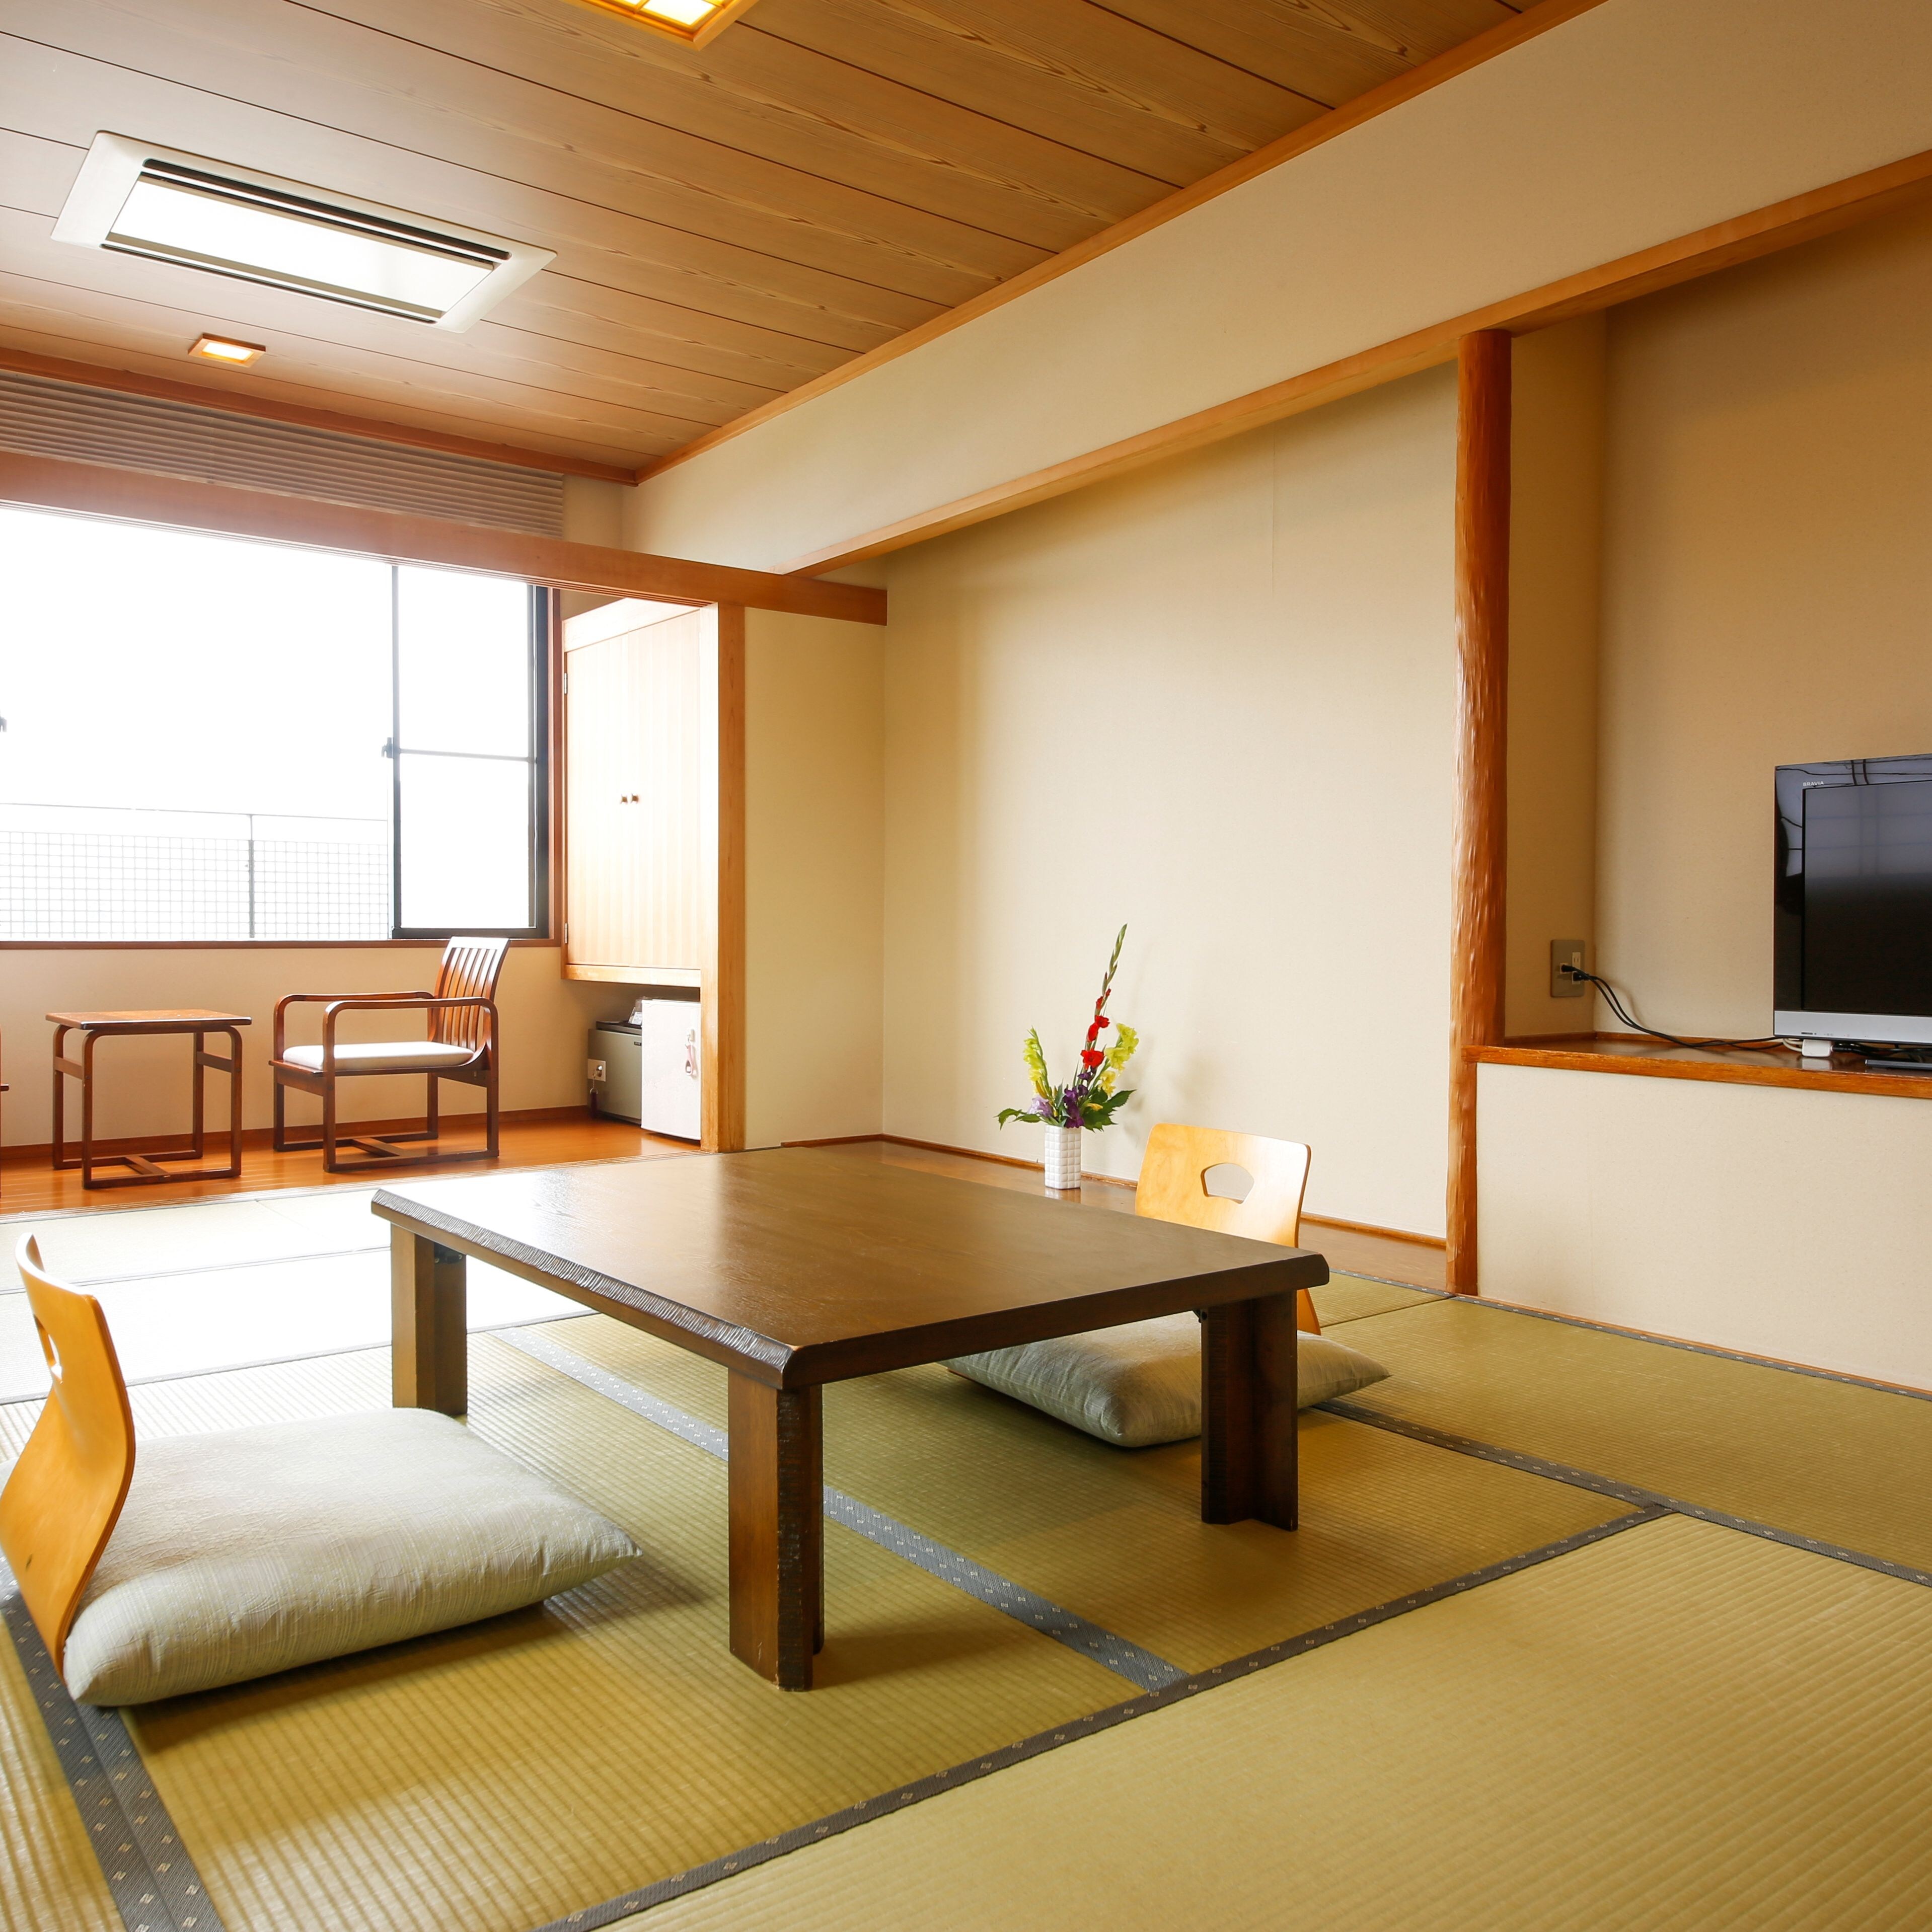 Di kamar bergaya Jepang yang bersih dan tenang, Anda dapat melupakan hiruk pikuk kehidupan sehari-hari dan bersantai.